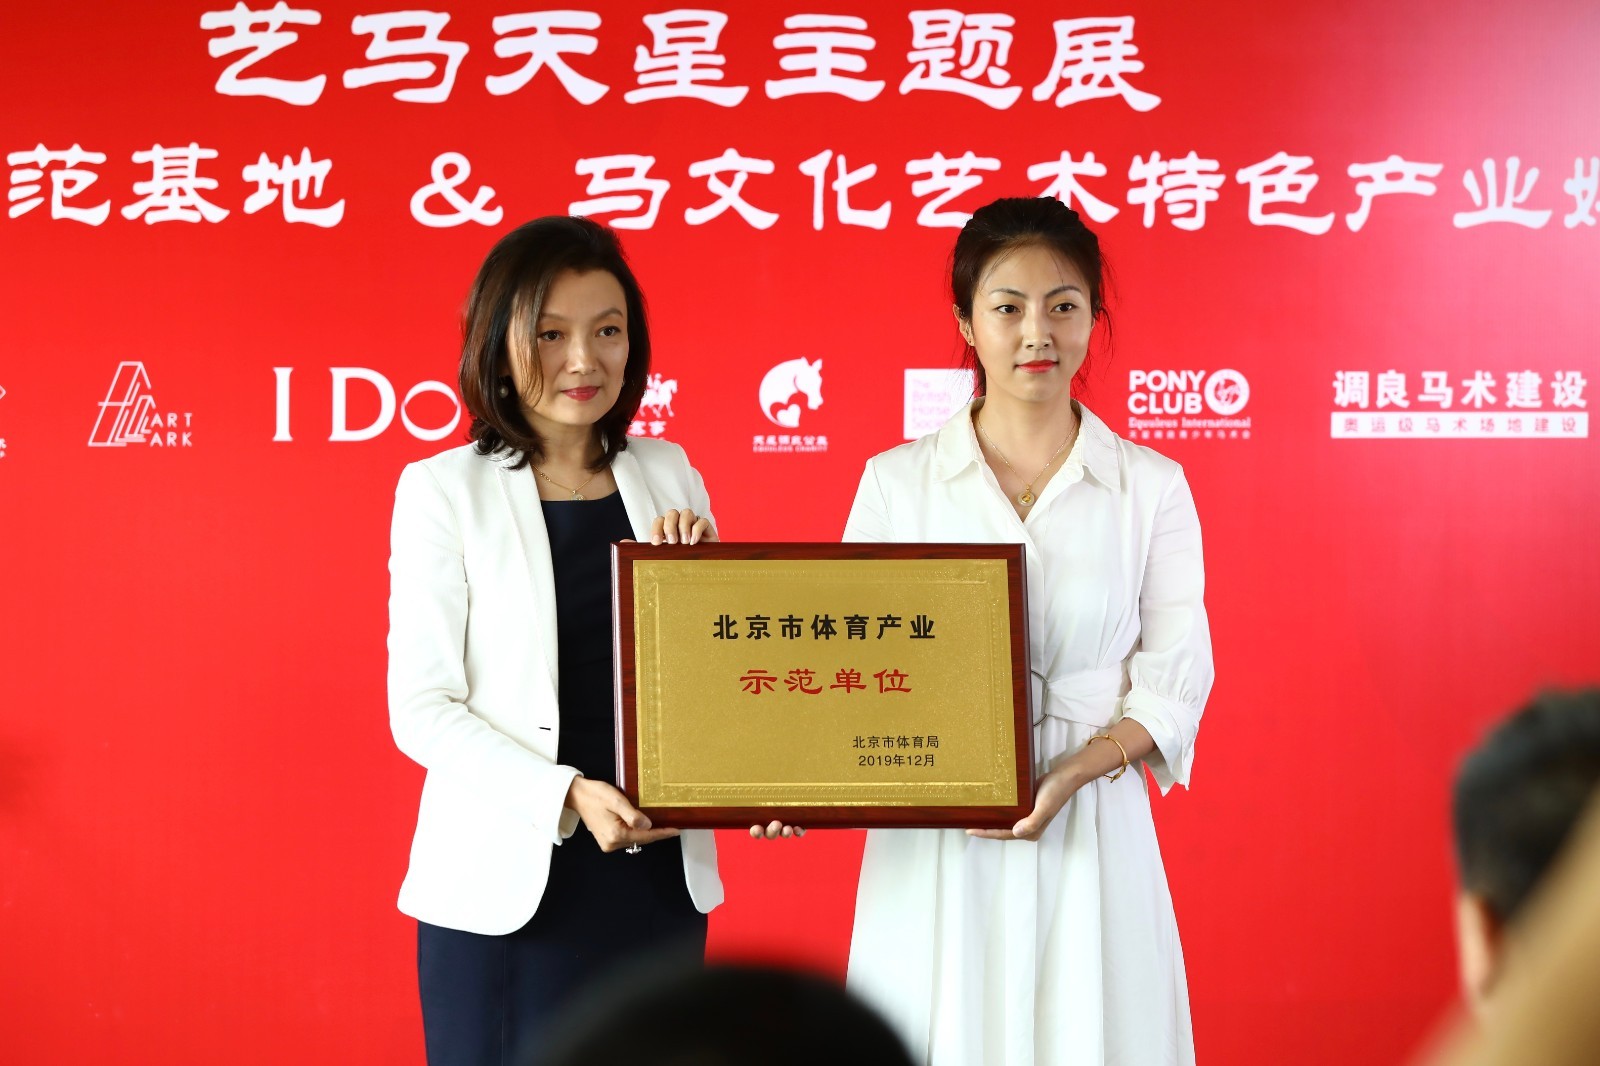 天星调良成为北京首家马术类体育产业示范单位